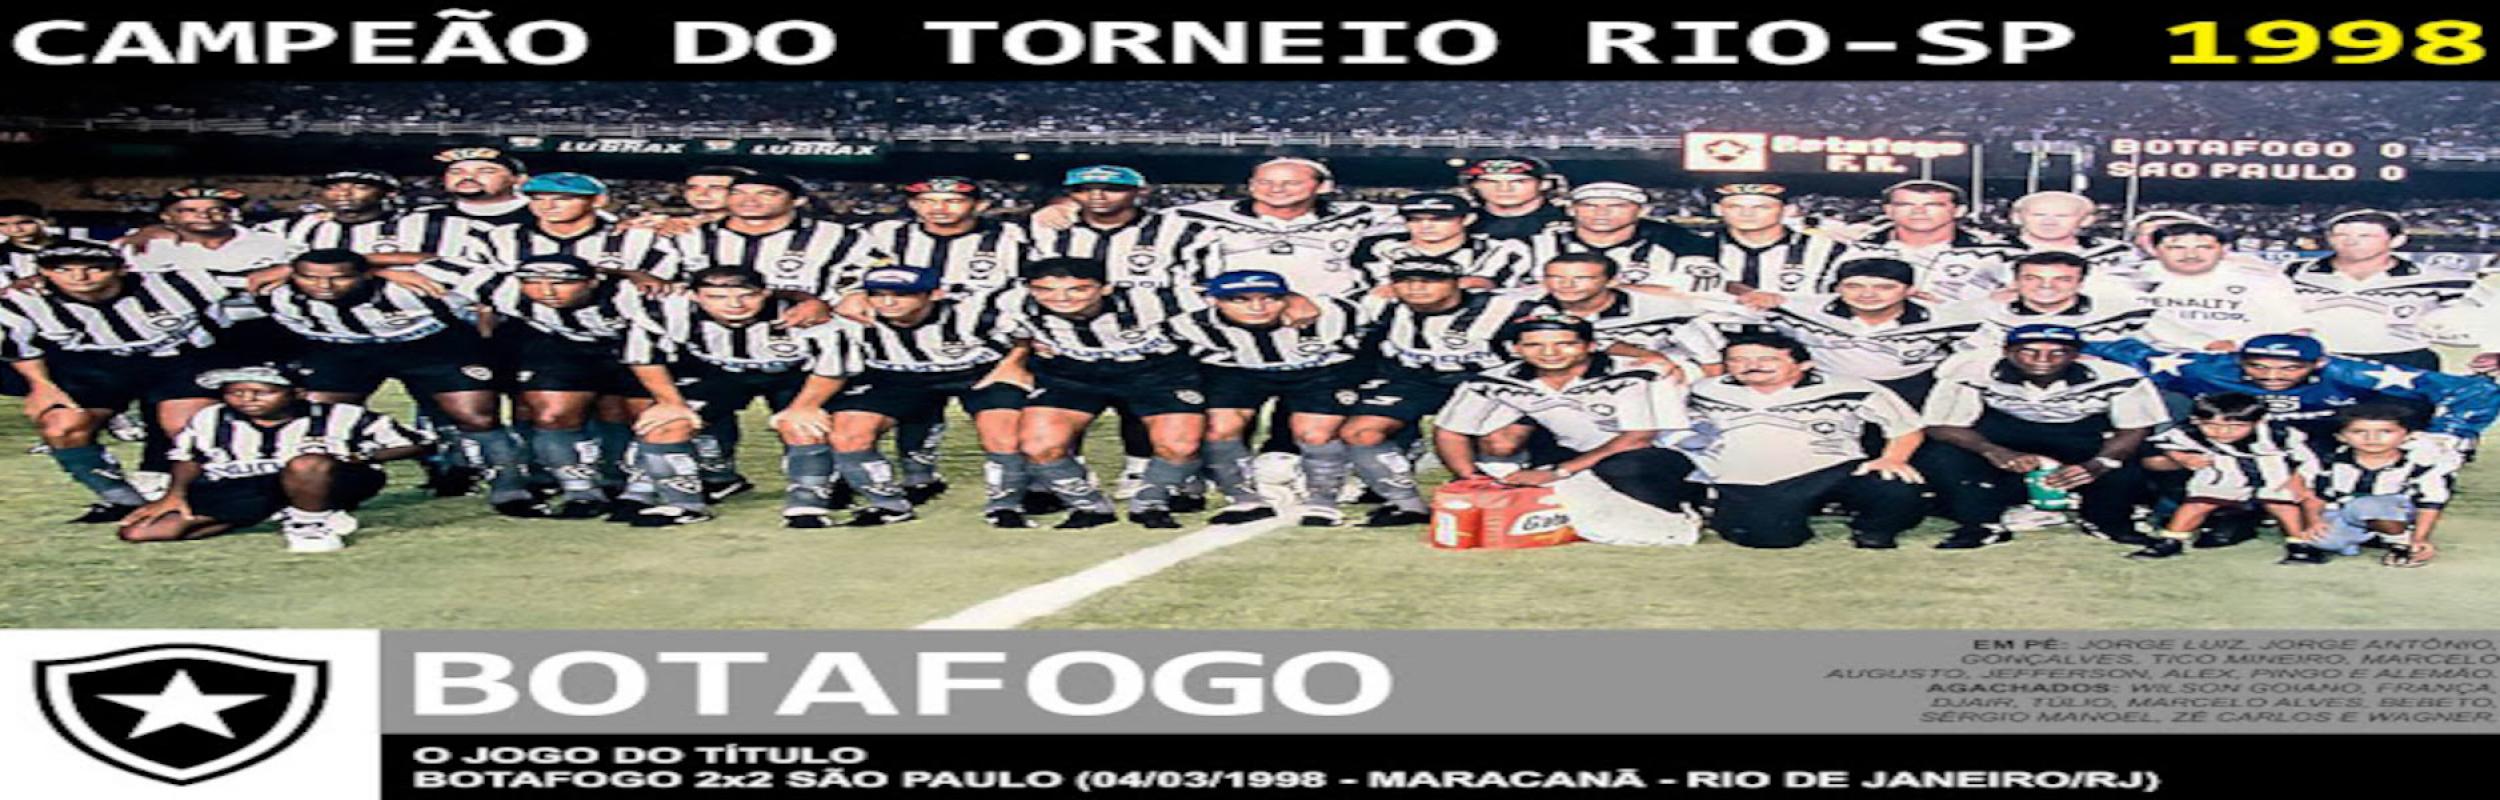 Torneio Rio-São Paulo 1998